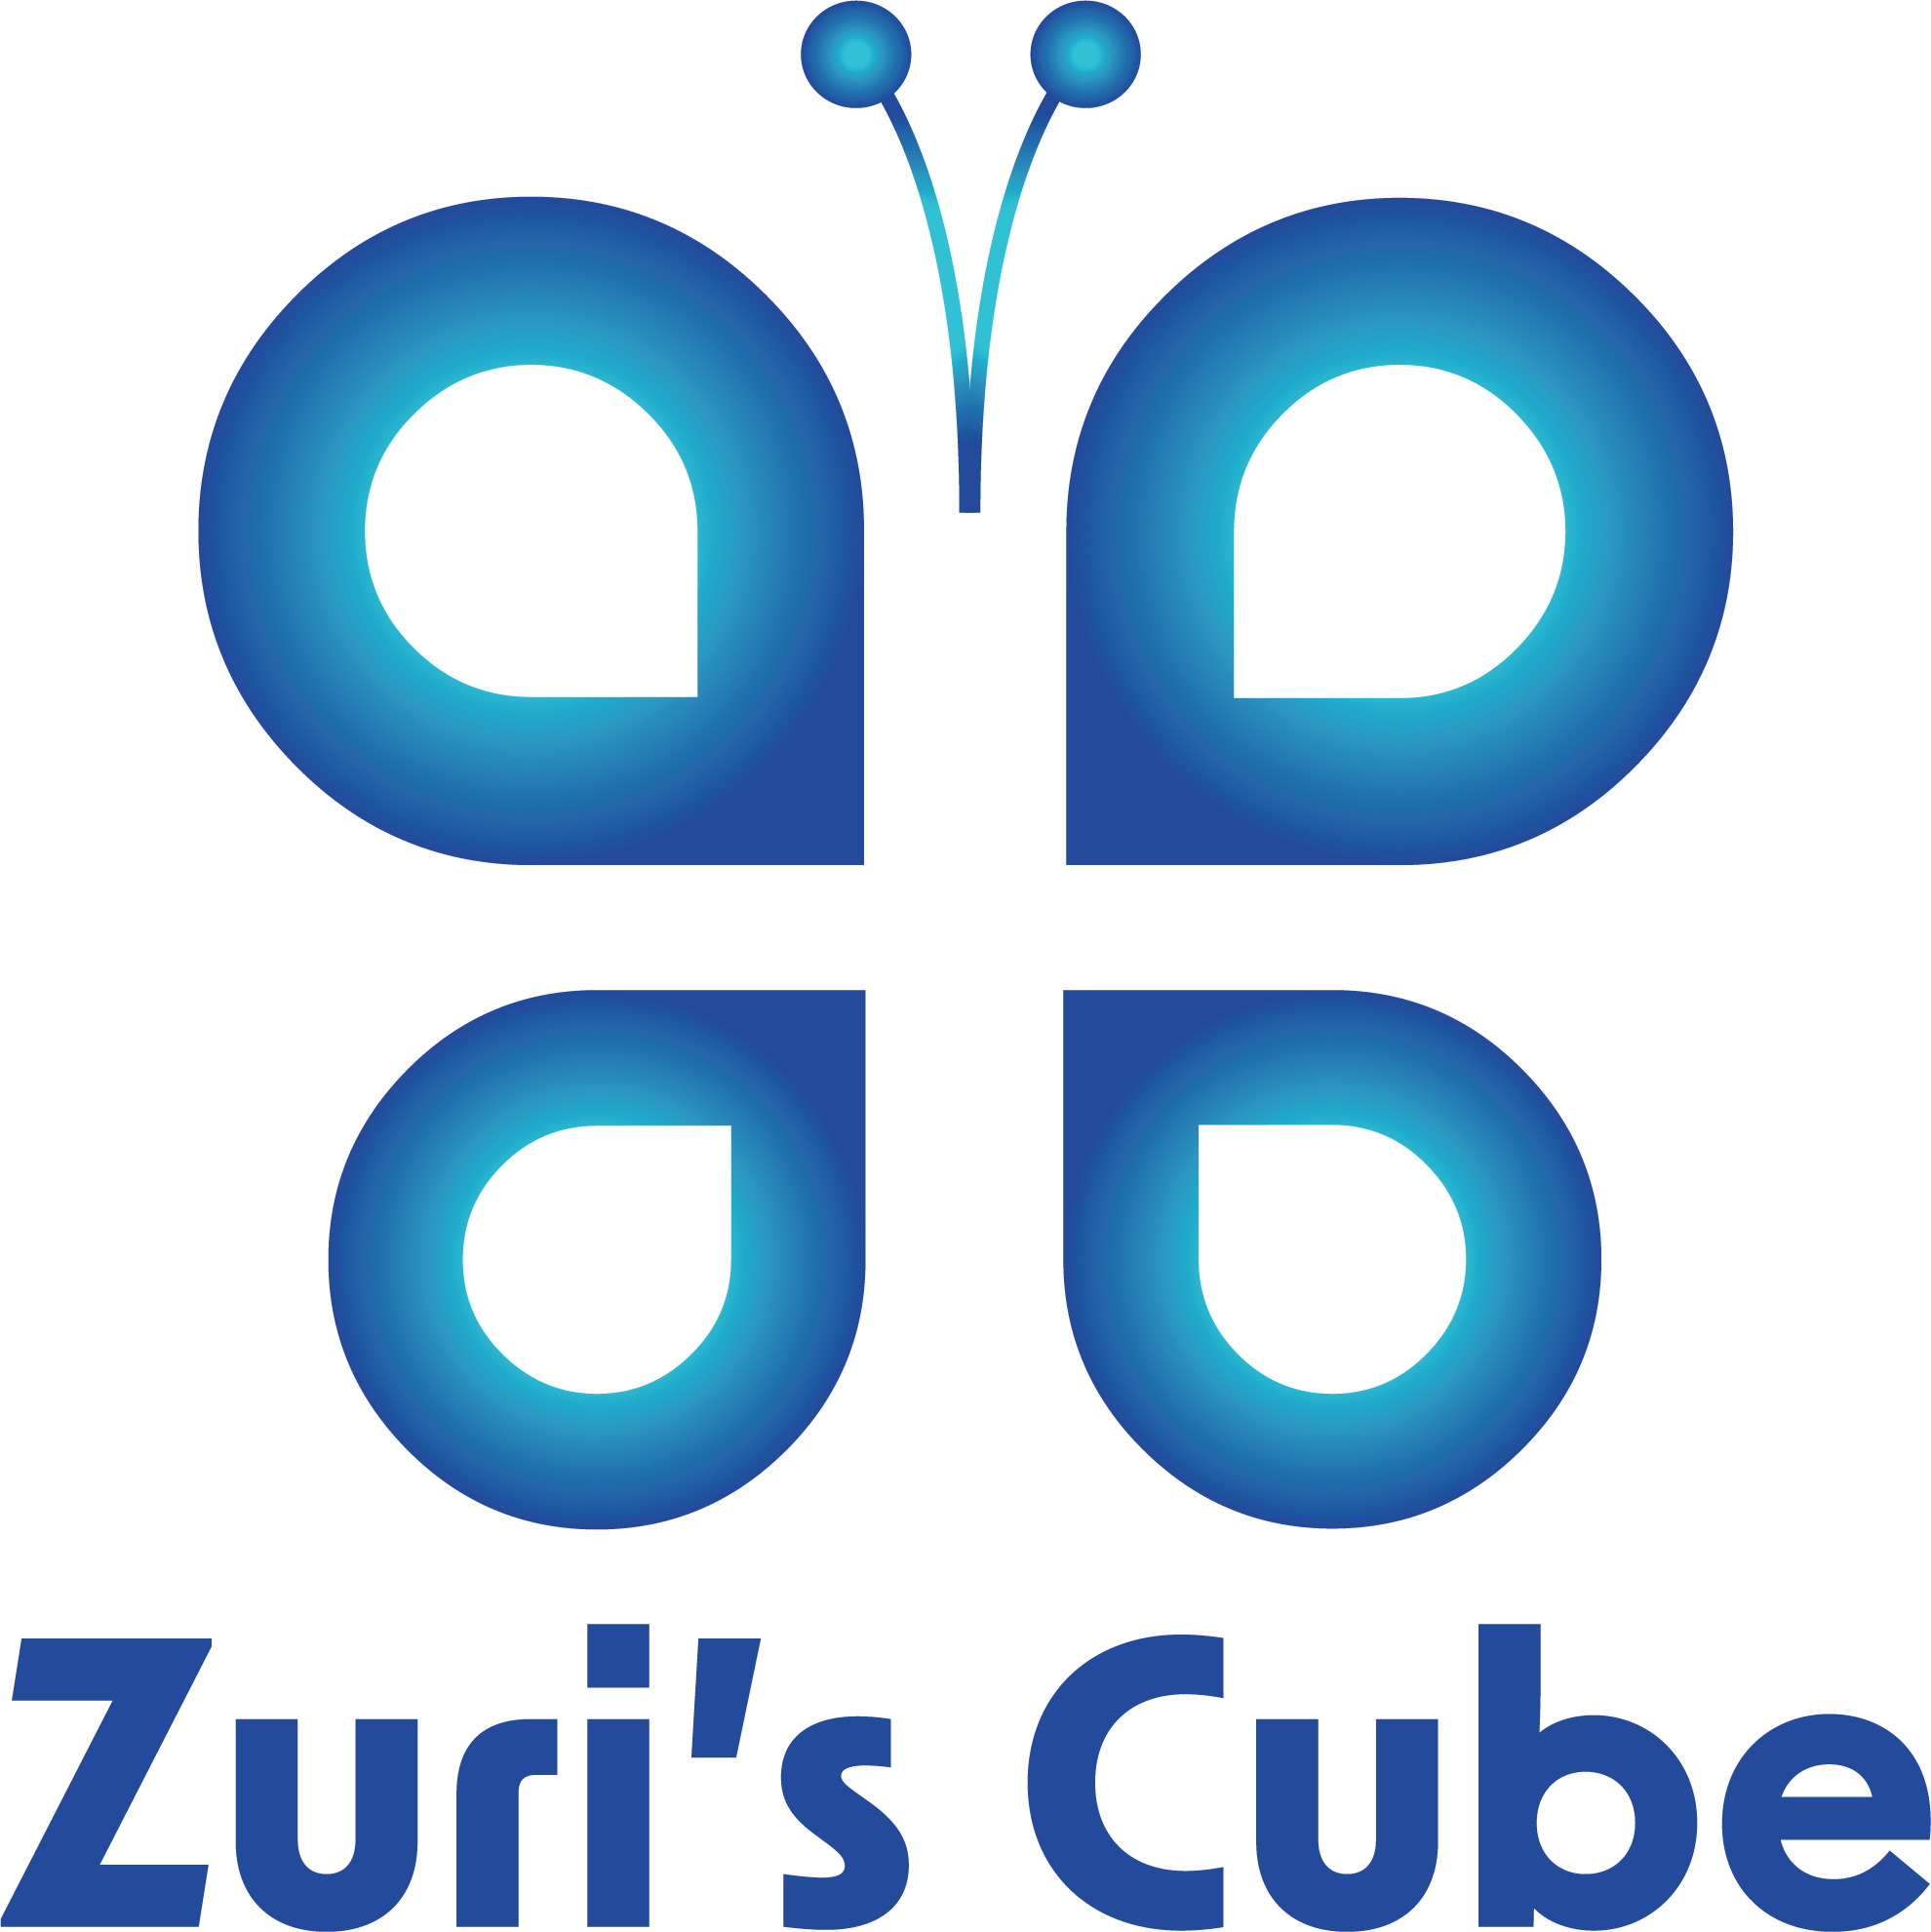 Zuri-s-cube-650a21d9553eb